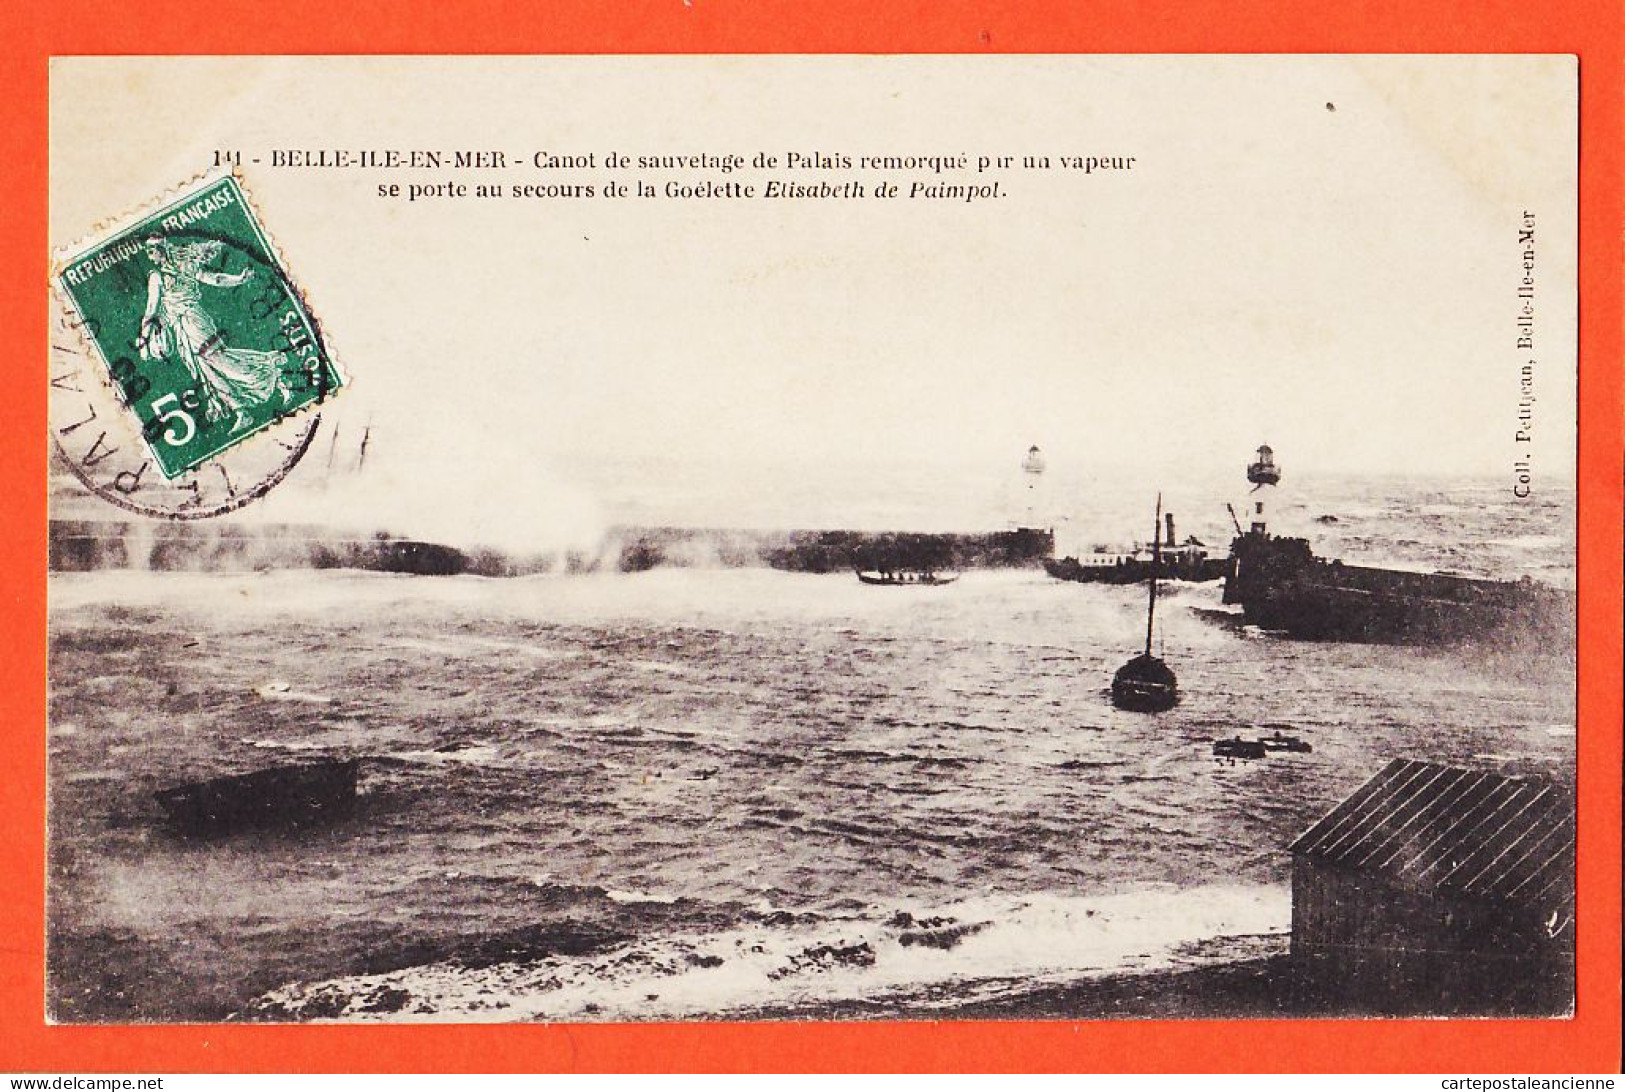 10626 ● 56-BELLE-ILE-MER Tempête 11-1909 Canot Sauvetage PALAIS Secours Goélette ÉLISABETH De PAIMPOL-PETITJEAN - Belle Ile En Mer